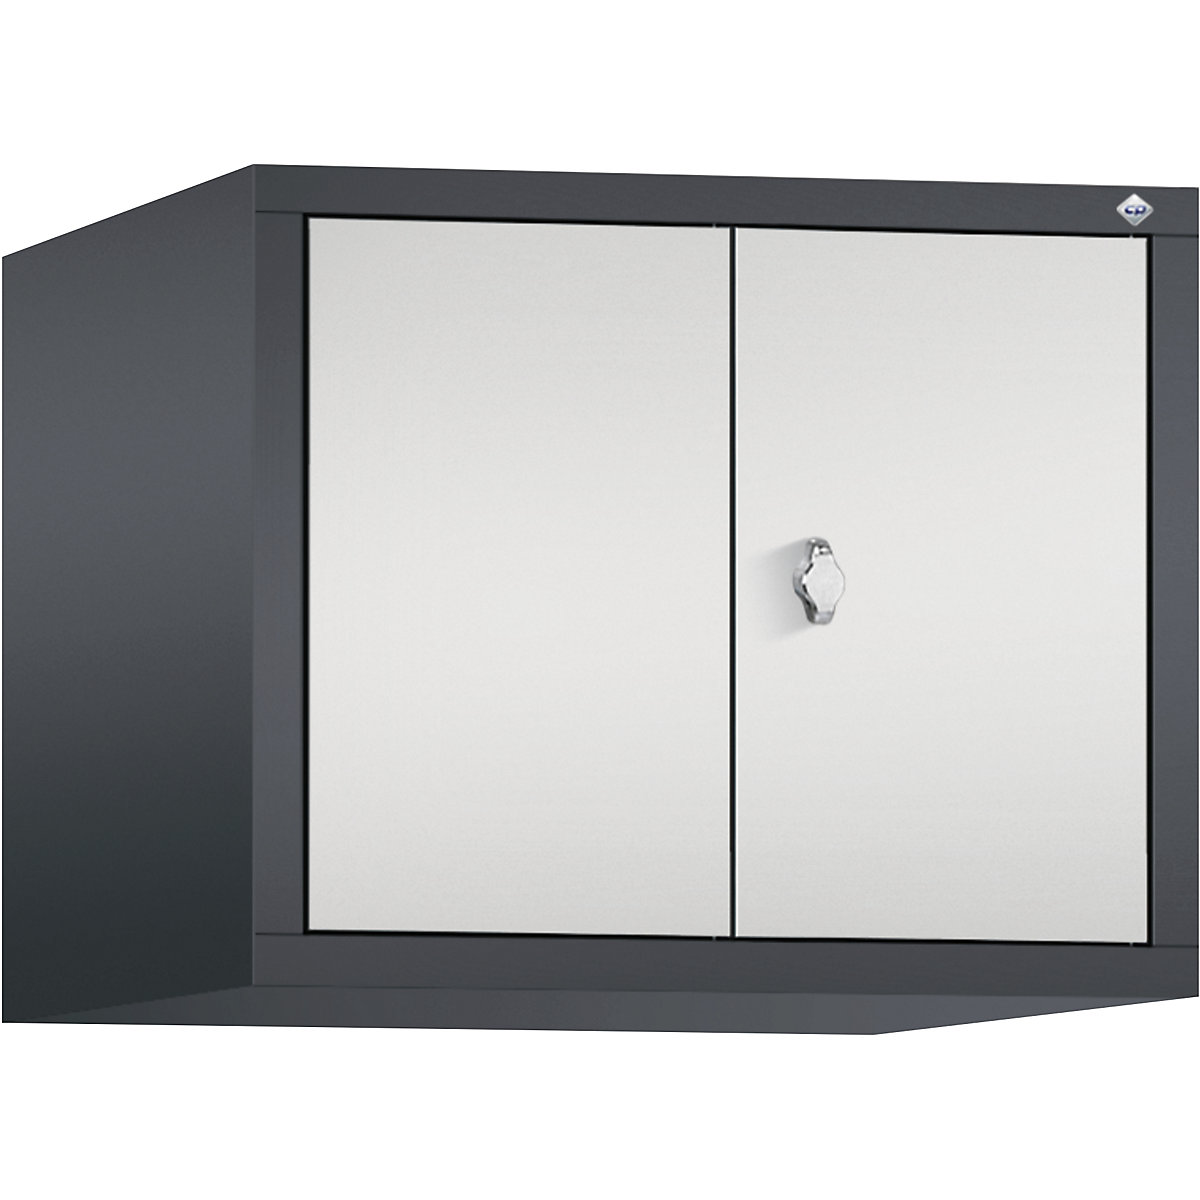 C+P – Altillo CLASSIC, puertas batientes que cierran al ras entre sí, 2 compartimentos, anchura de compartimento 300 mm, gris negruzco / gris luminoso